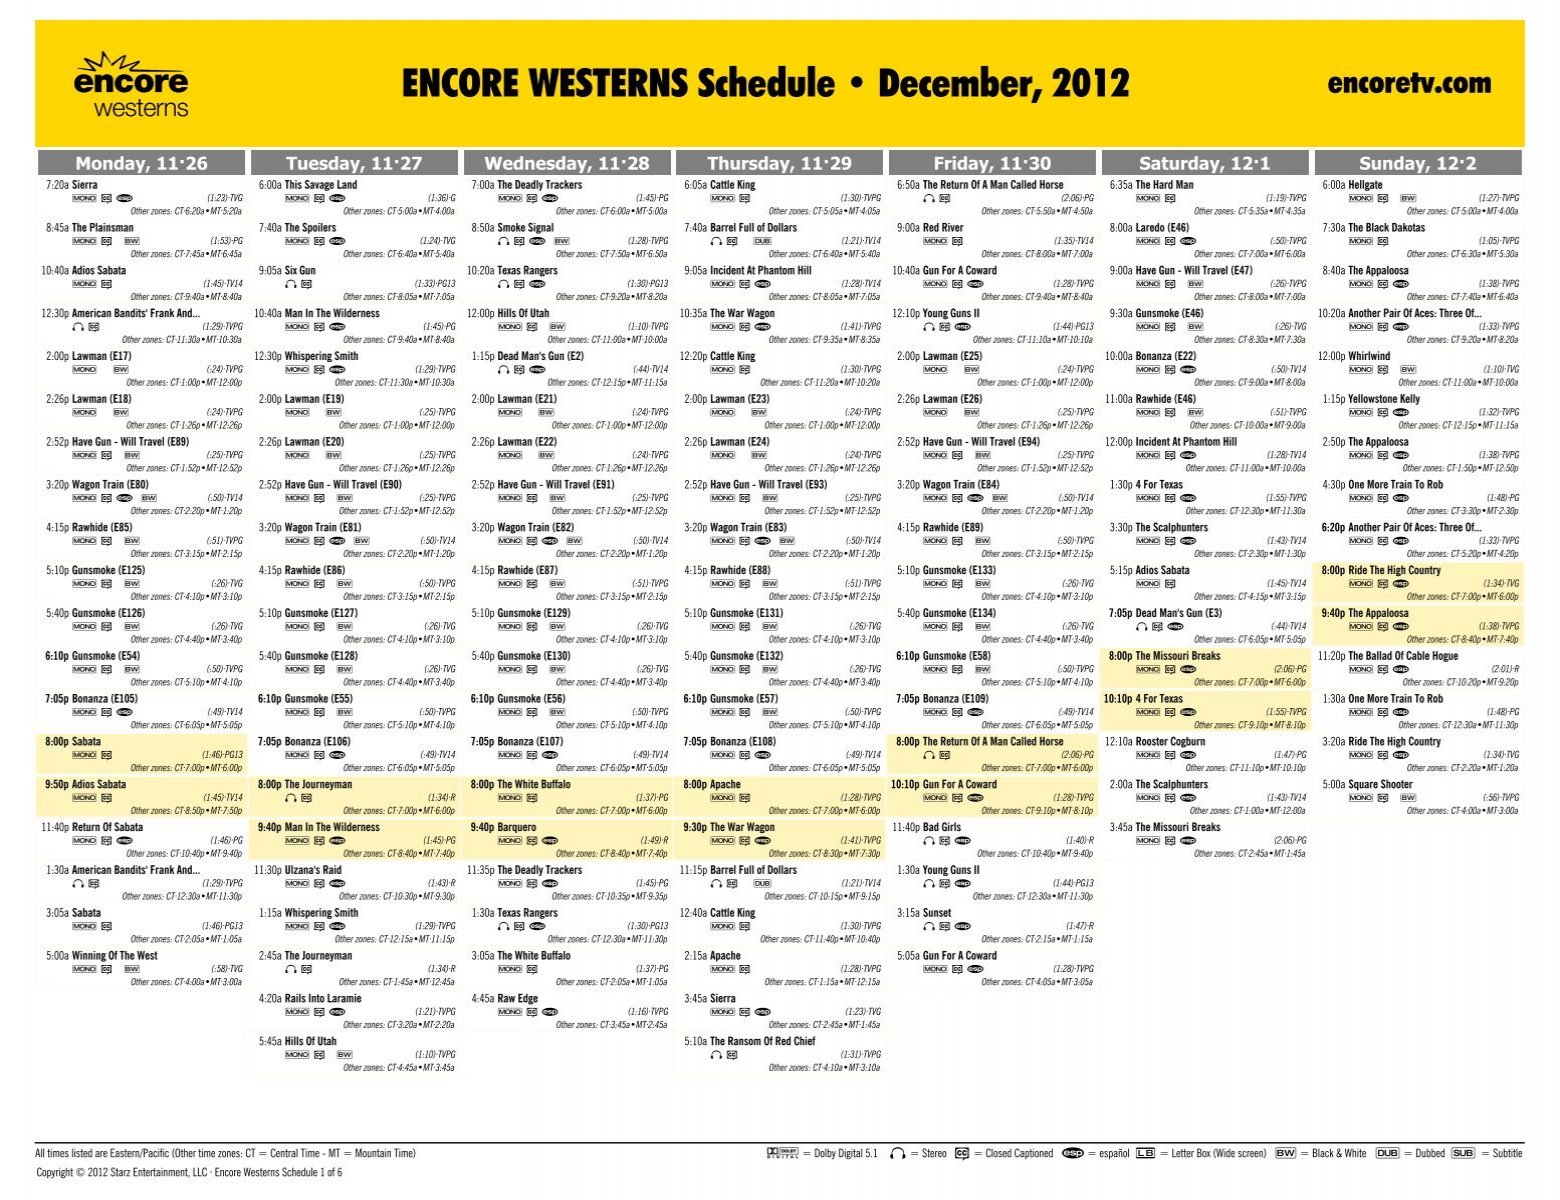 ENCORE WESTERNS Schedule - December, 2012 - Starz